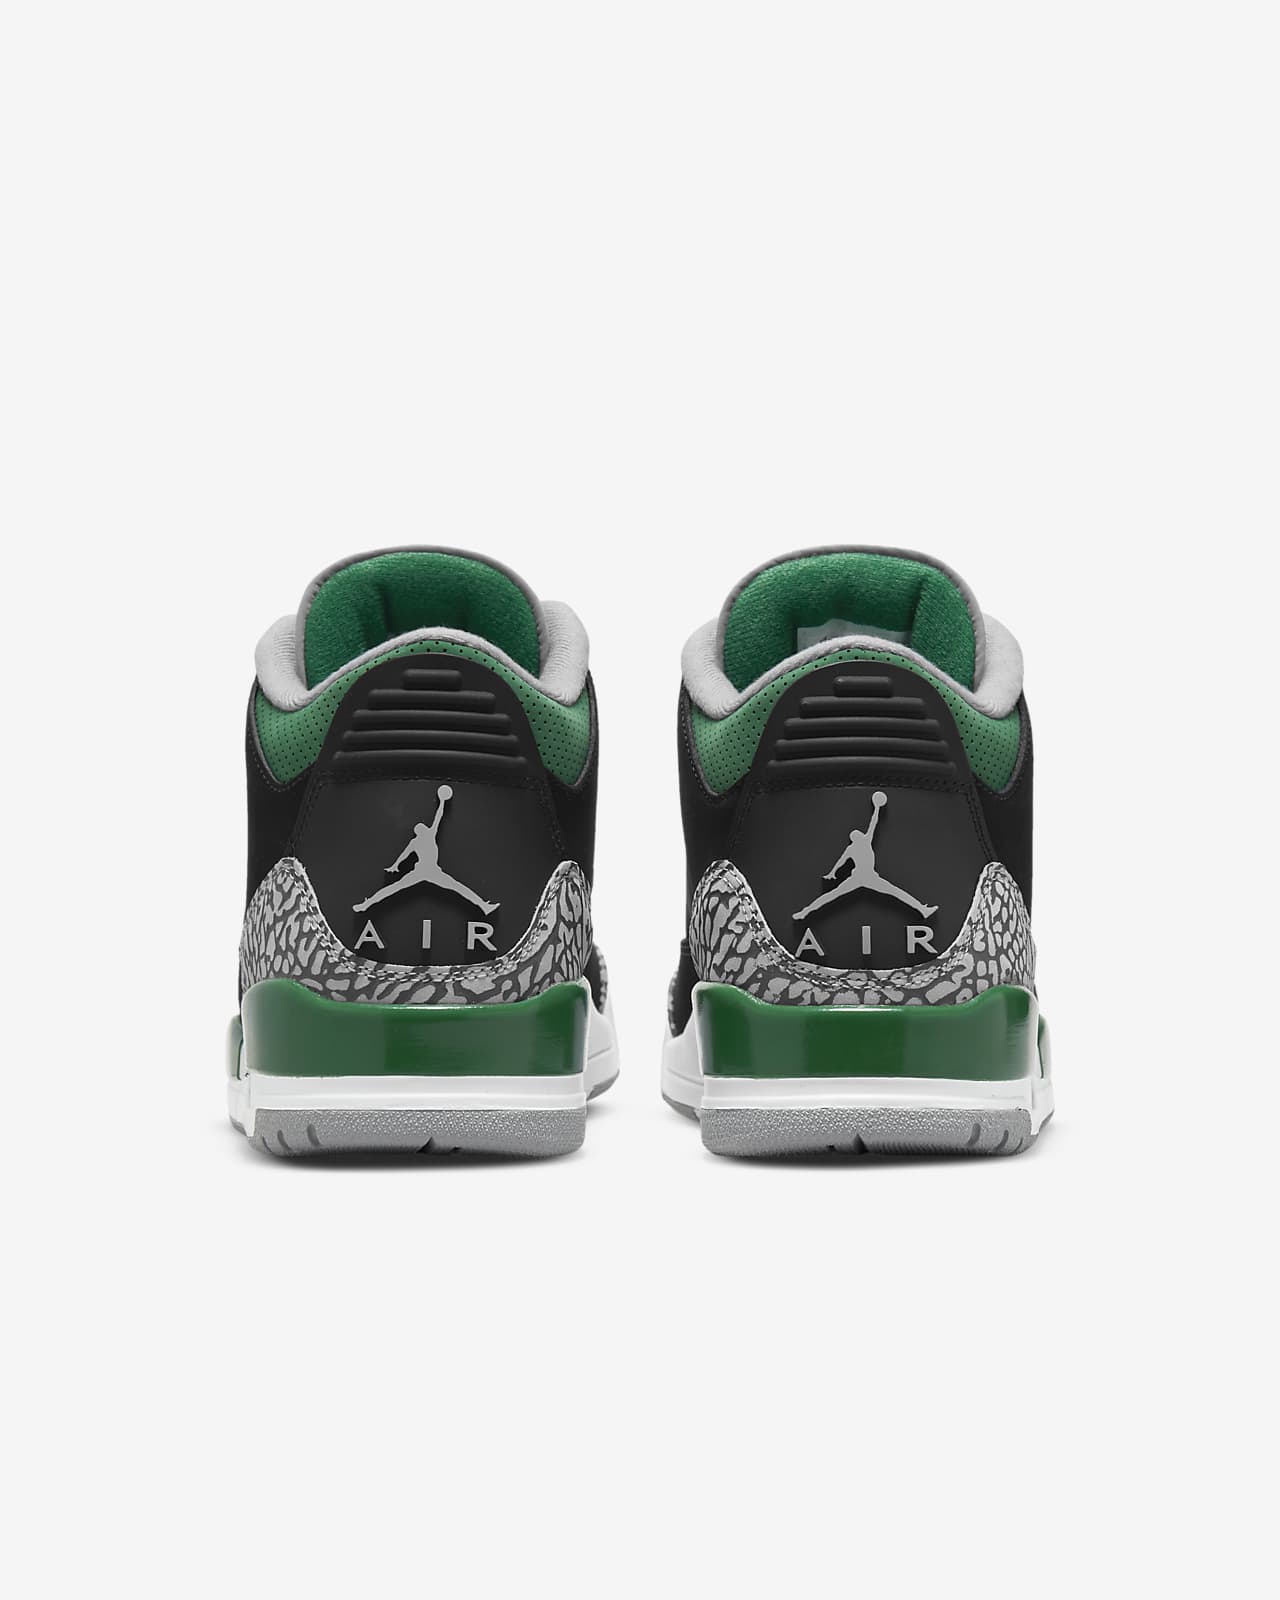 Air Jordan 3 Retro Shoe استخدام الليزر المنزلي